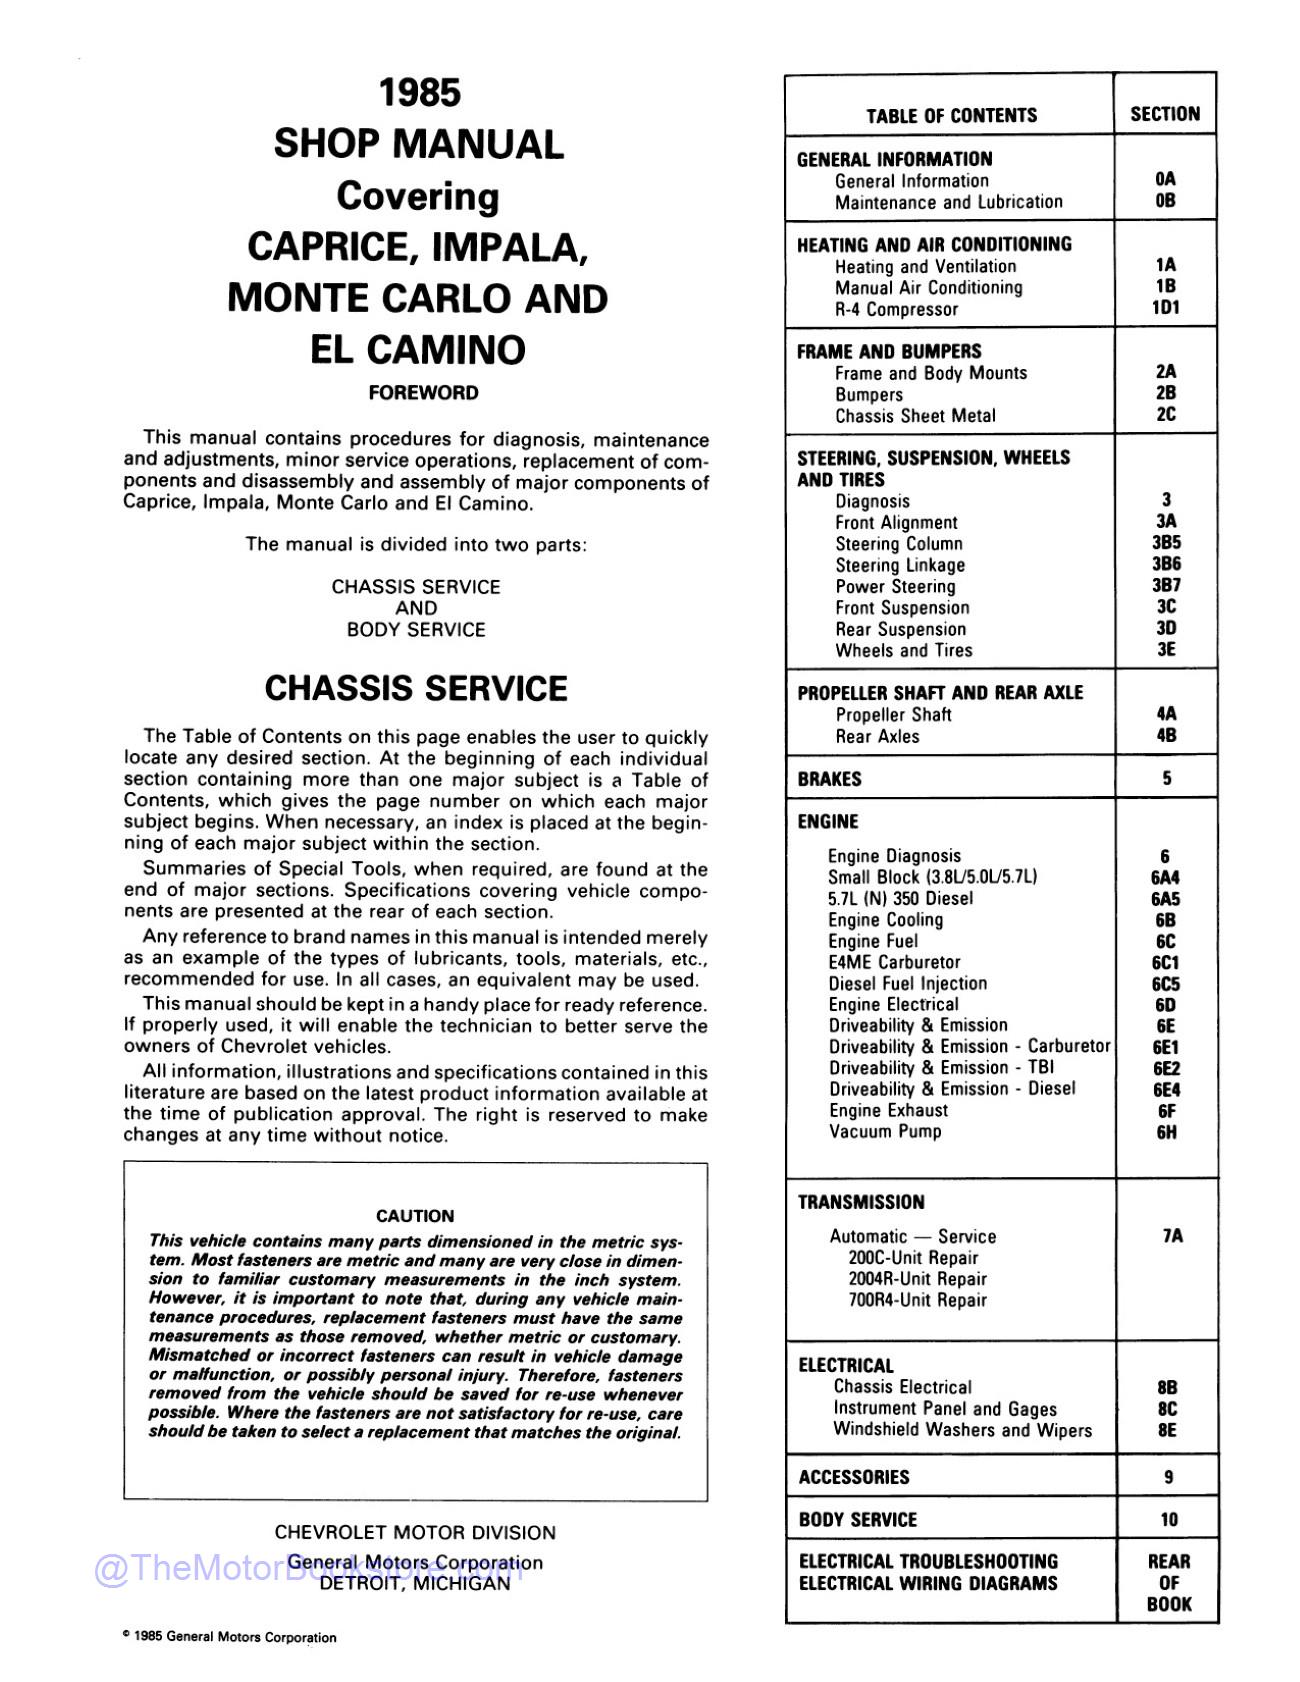 1985 Chevy Monte Carlo, El Camino, Impala Shop Manual  - Table of Contents